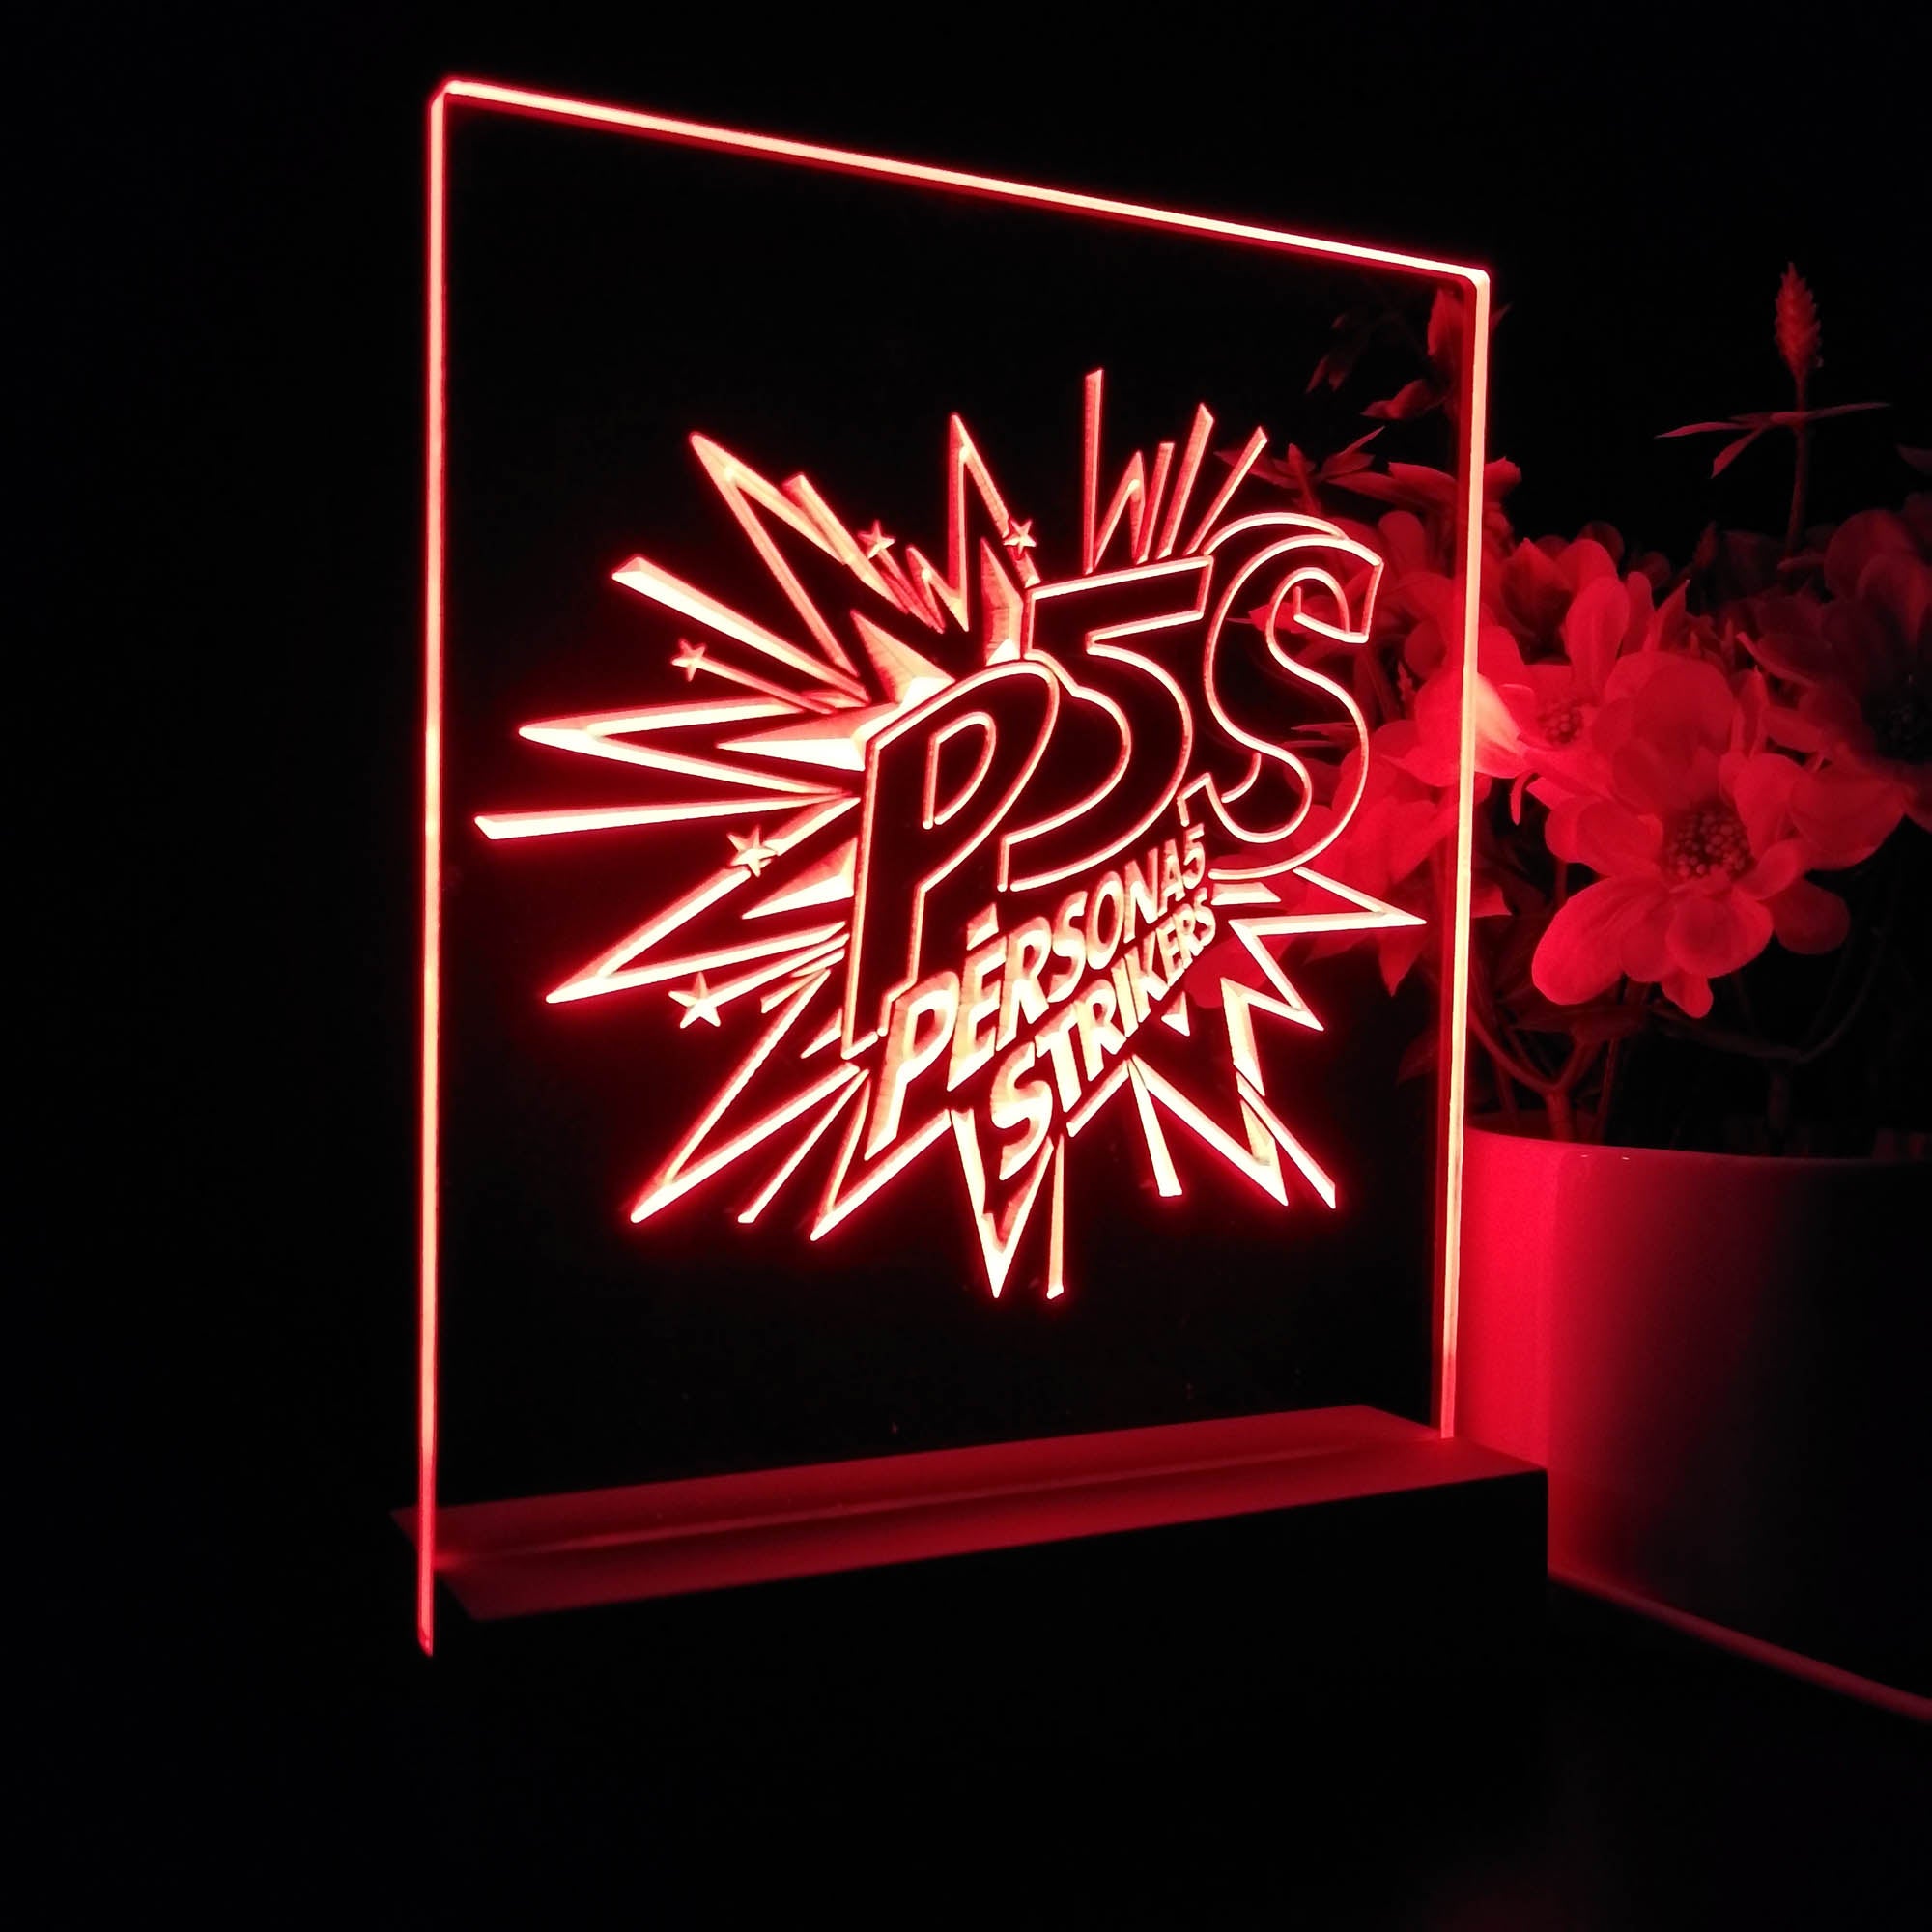 Persona 5 Strikers 3D LED Optical Illusion Sleep Night Light Table Lamp